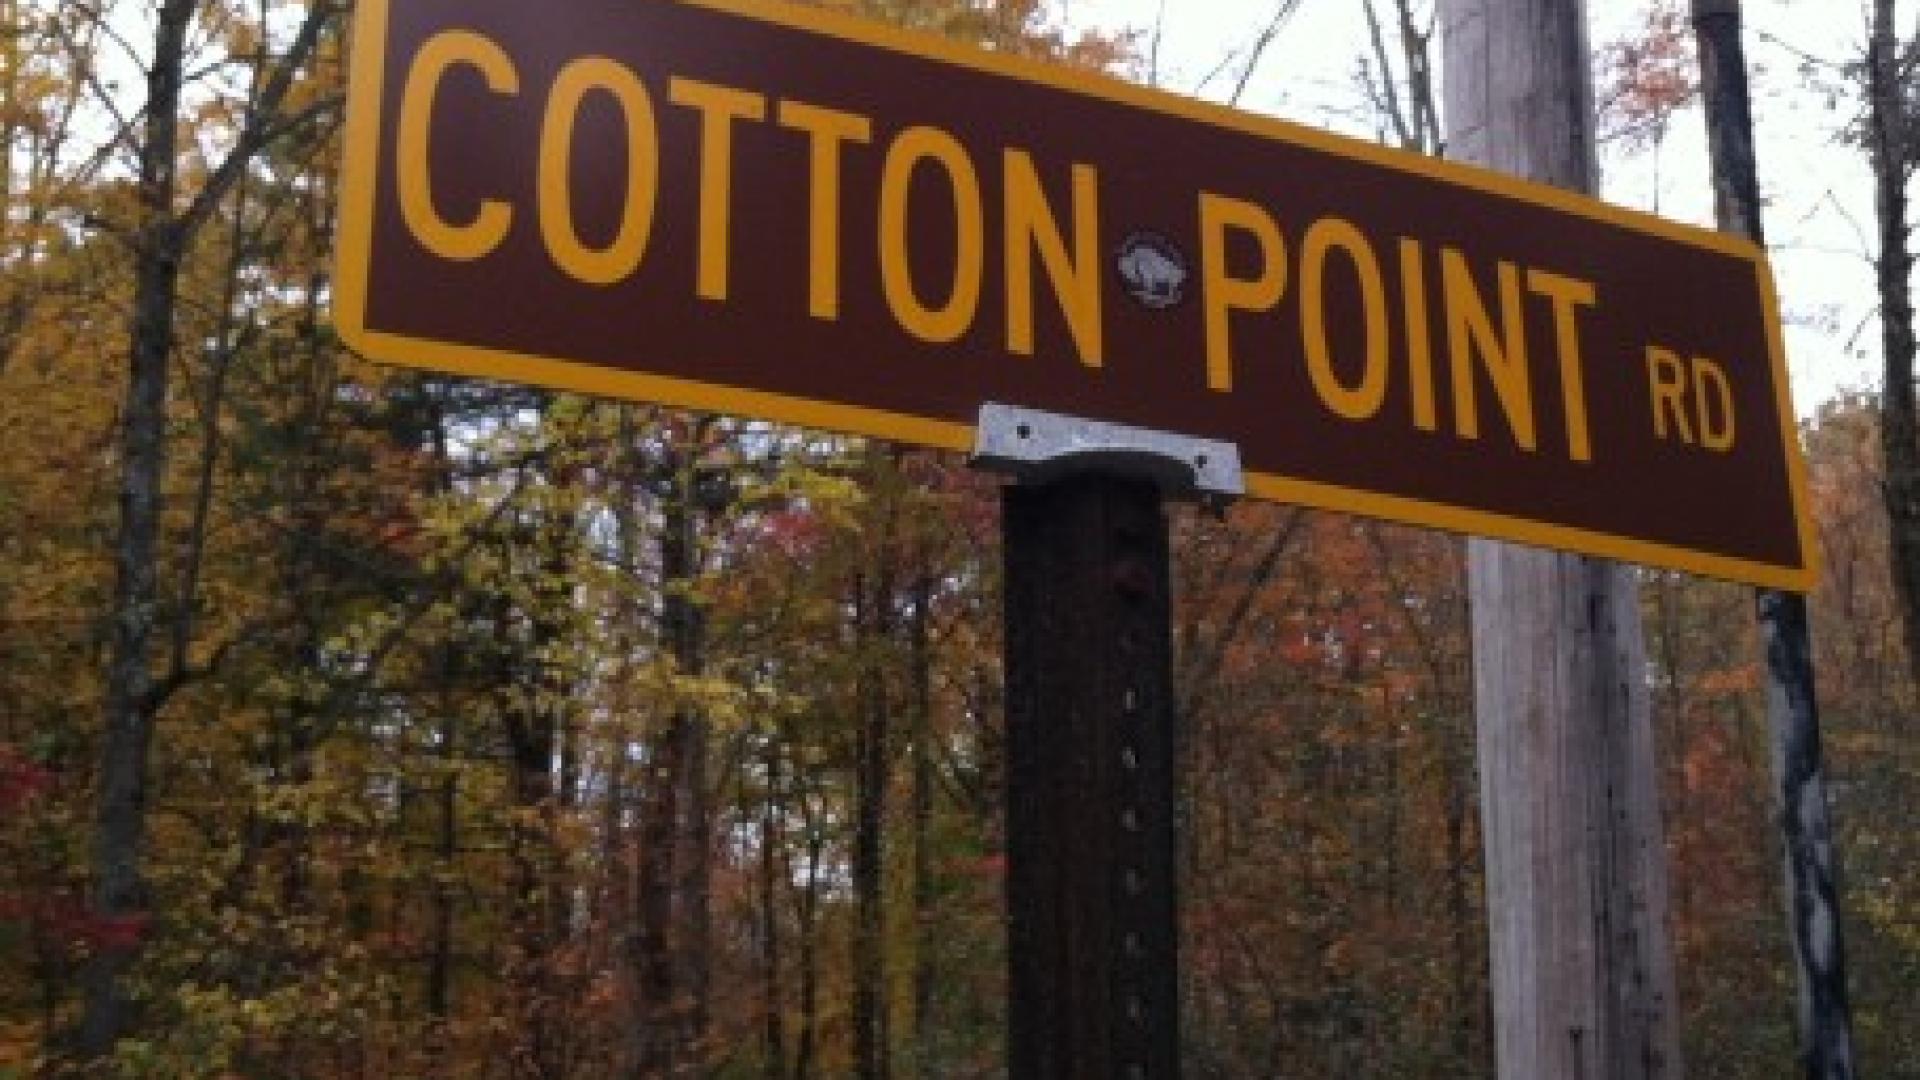 Cotton Point Rentals